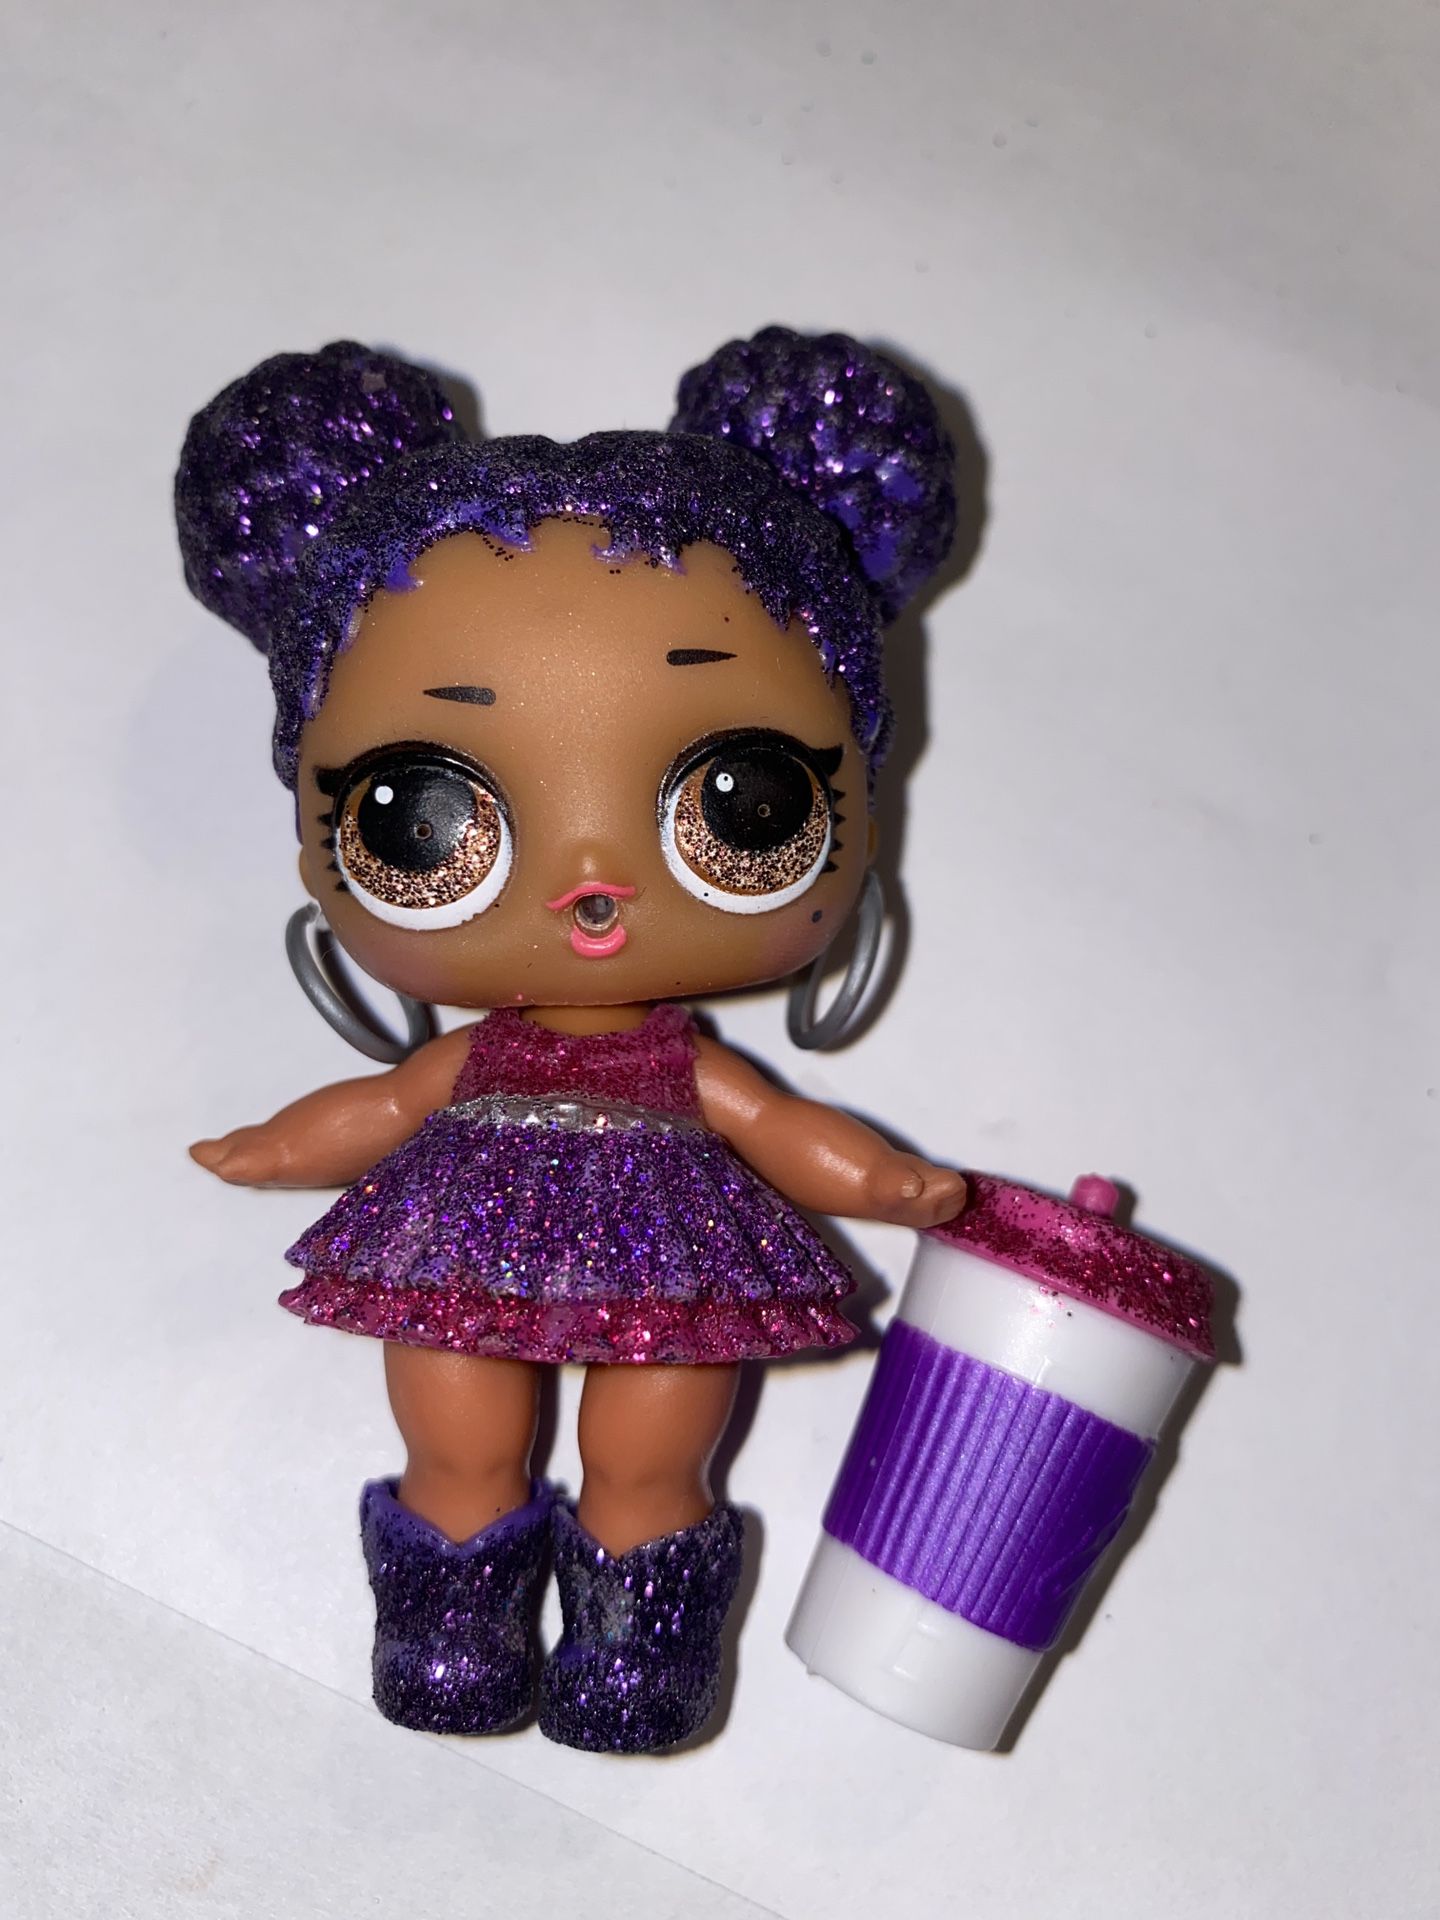 Lol doll “purple queen”